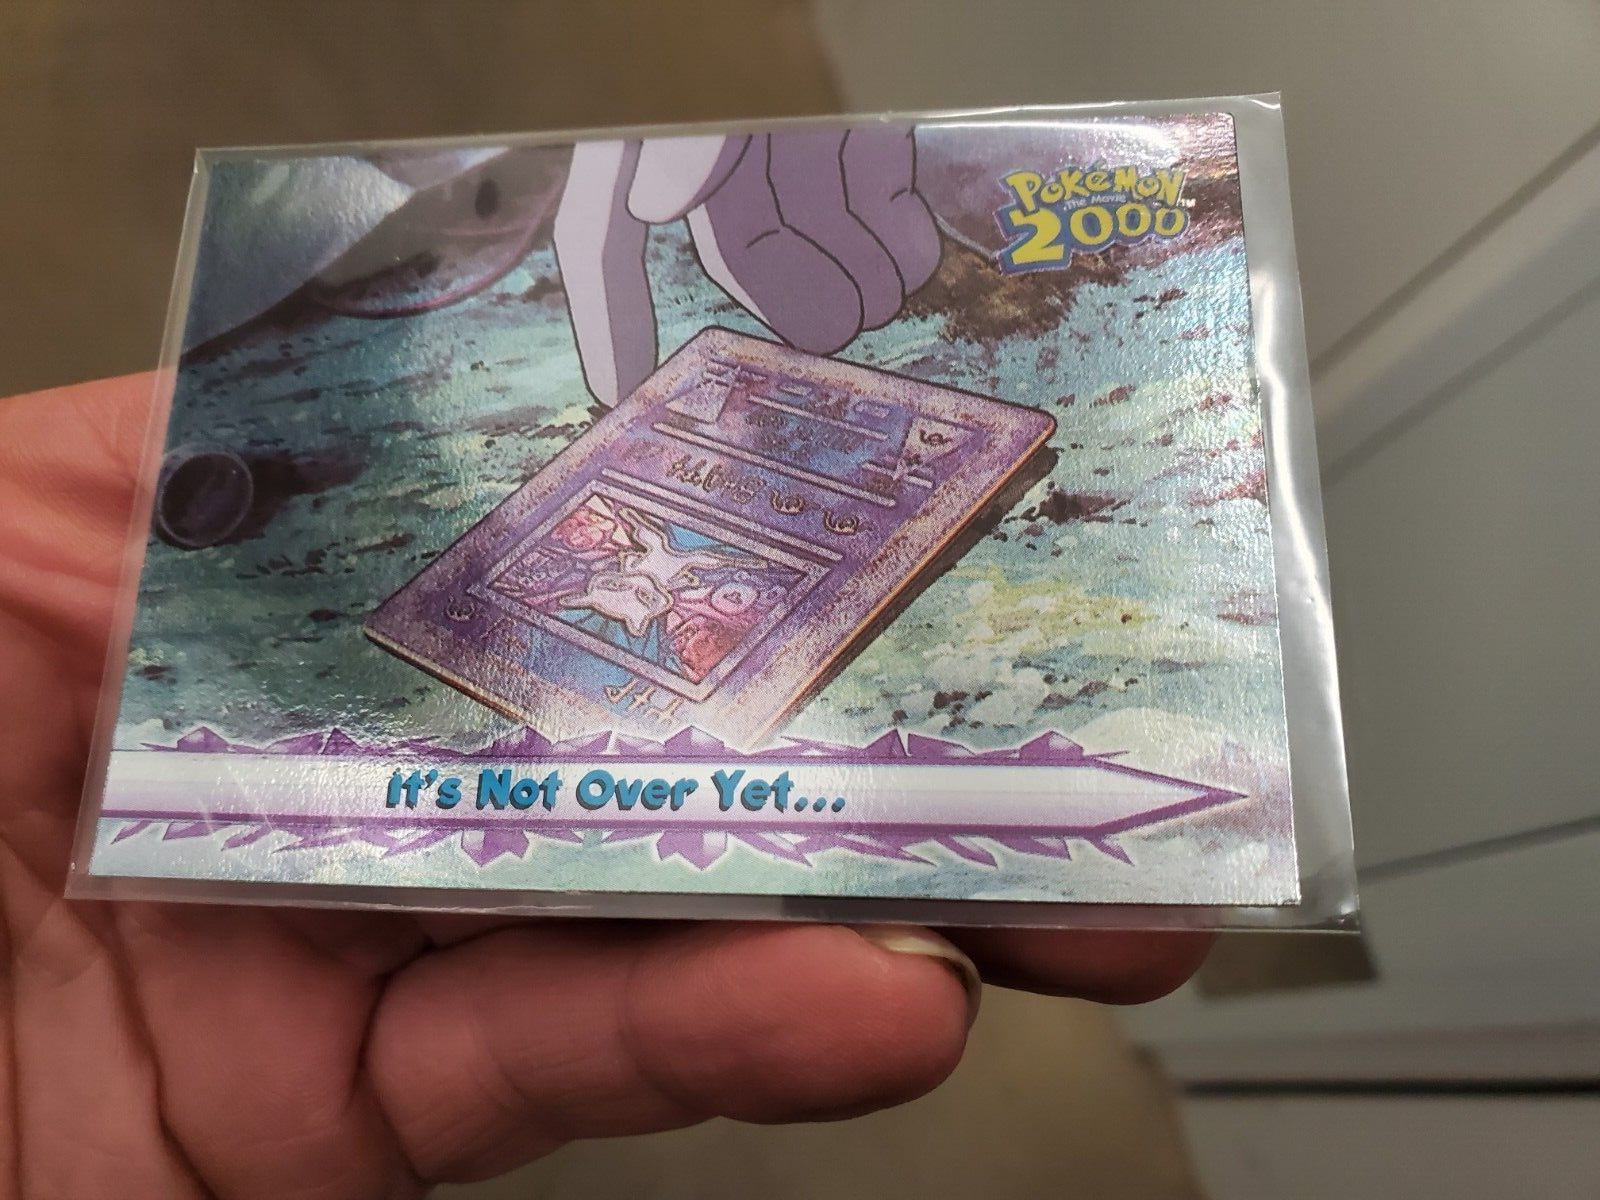 HOLO LP Pokemon Topps Card - Pokemon 2000 - It\'s Not Over Yet #70 - Foil